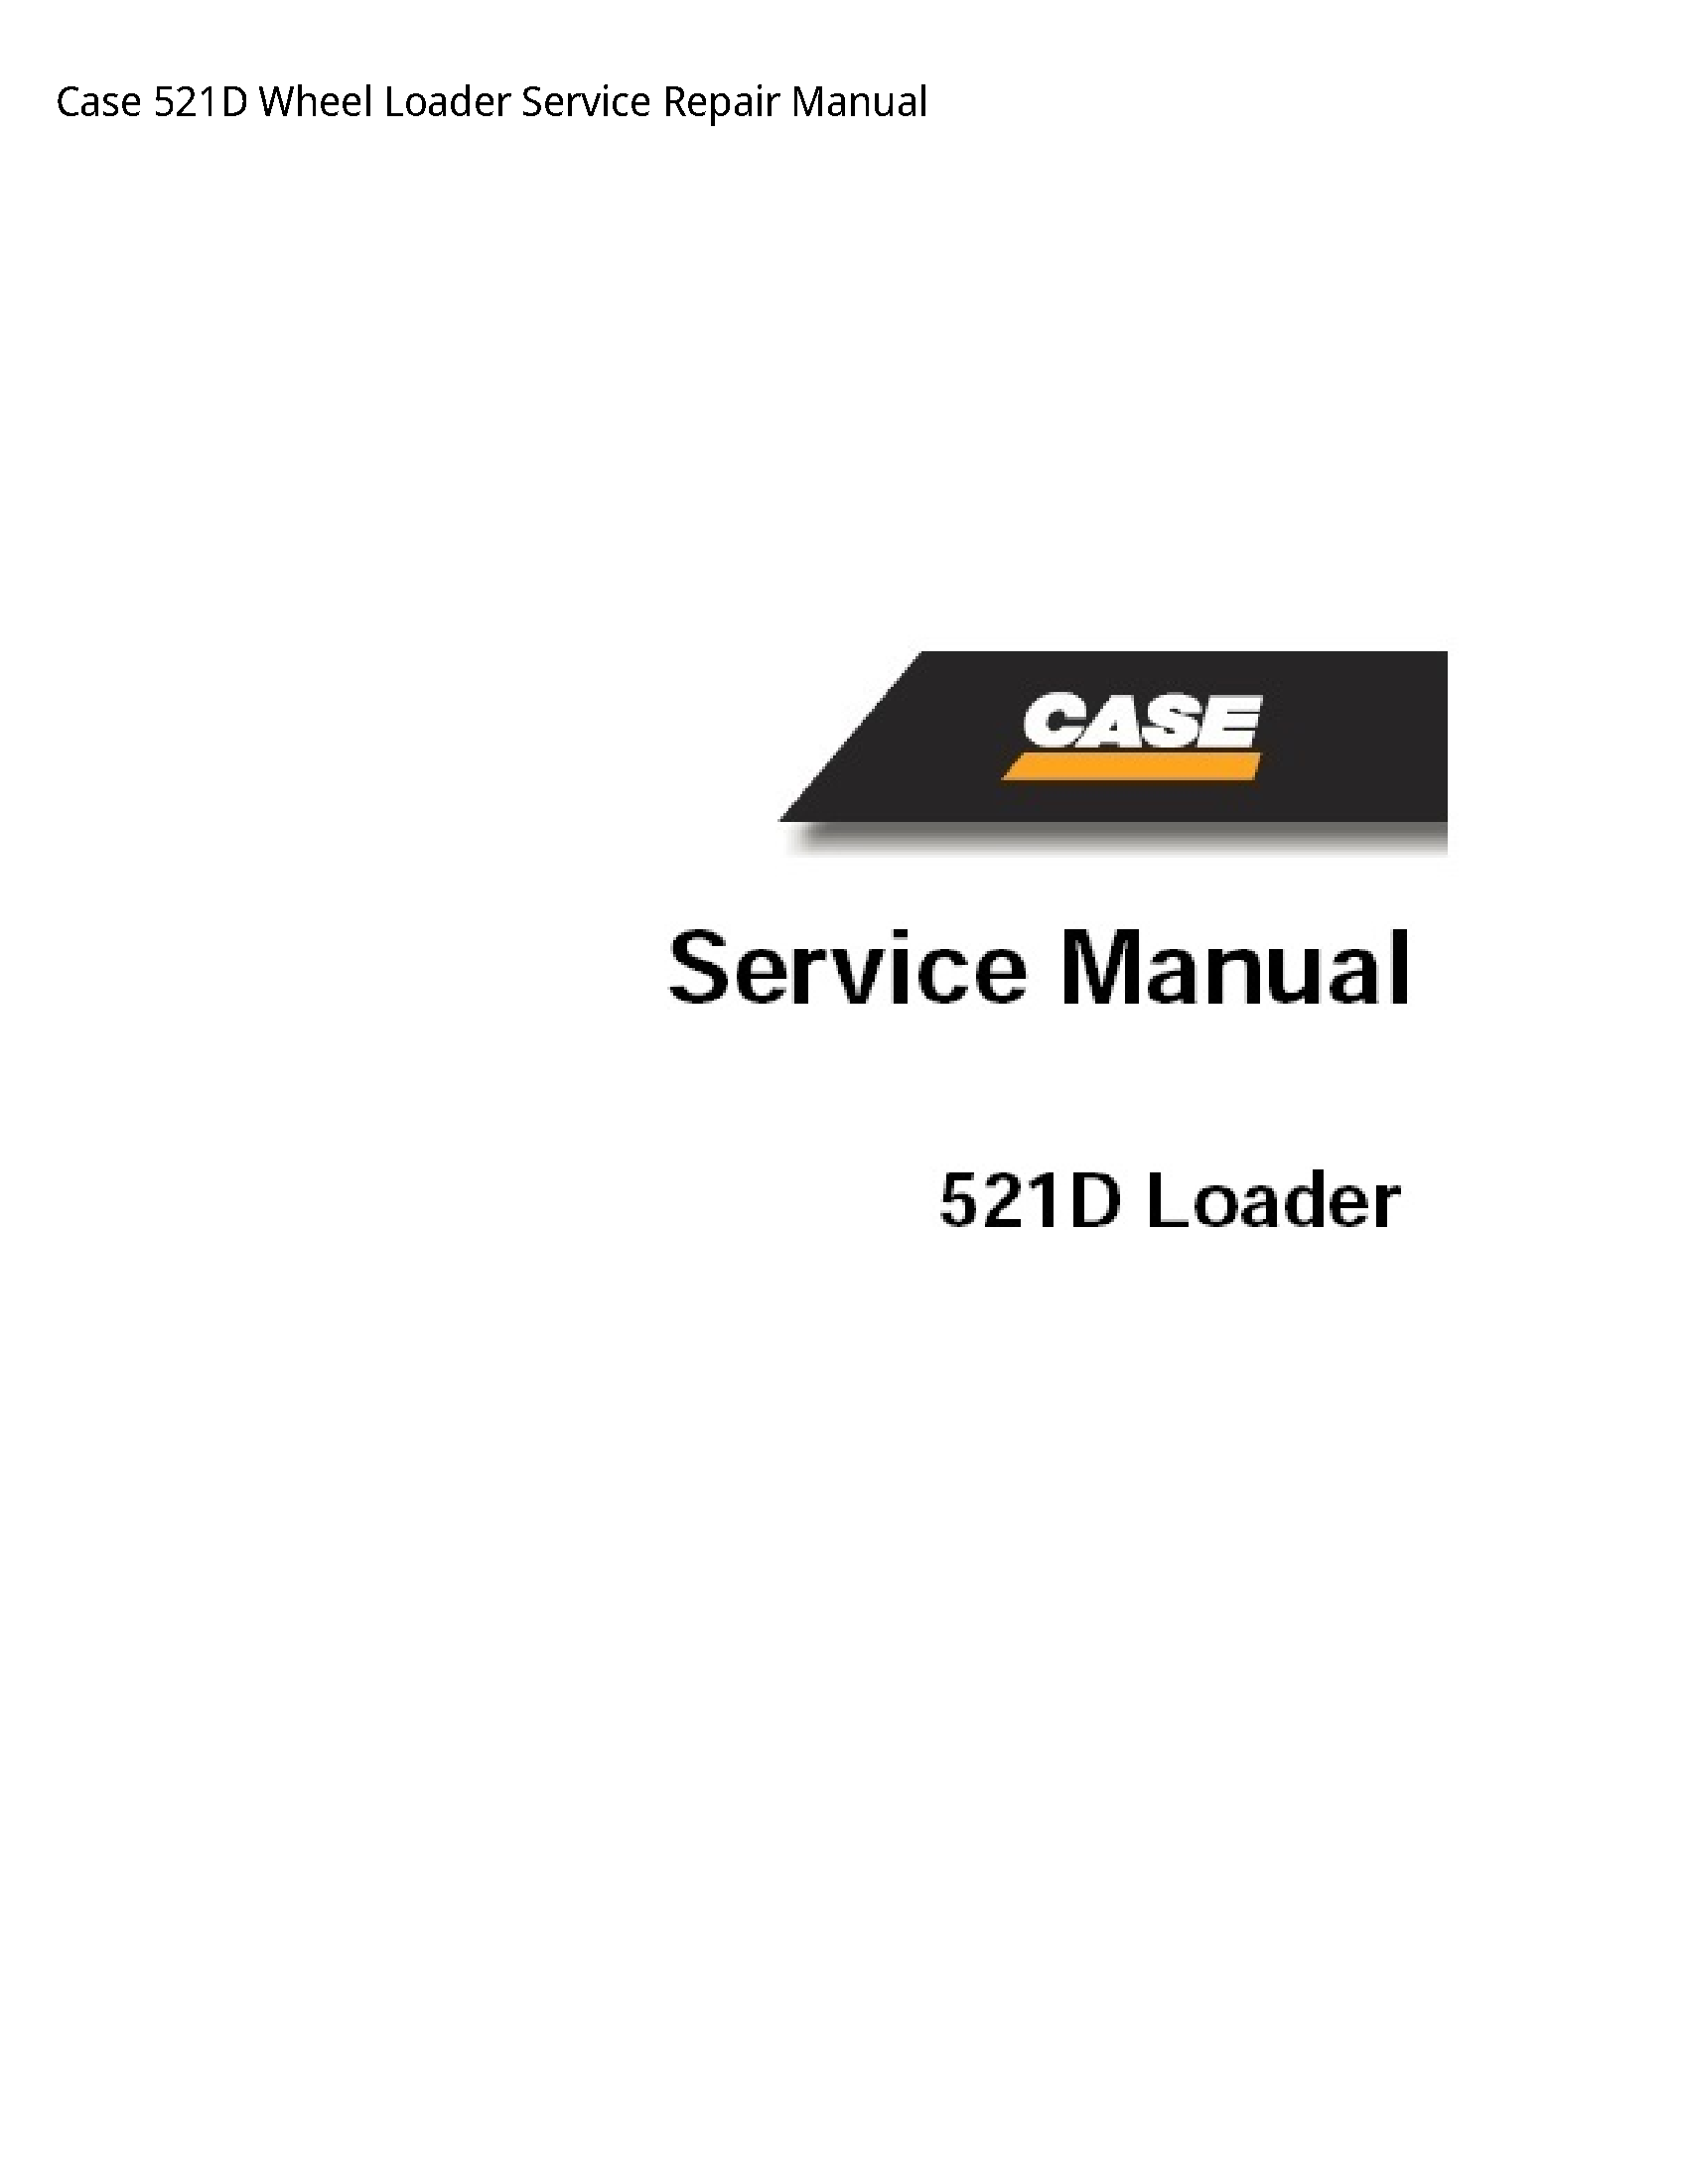 Case/Case IH 521D Wheel Loader manual